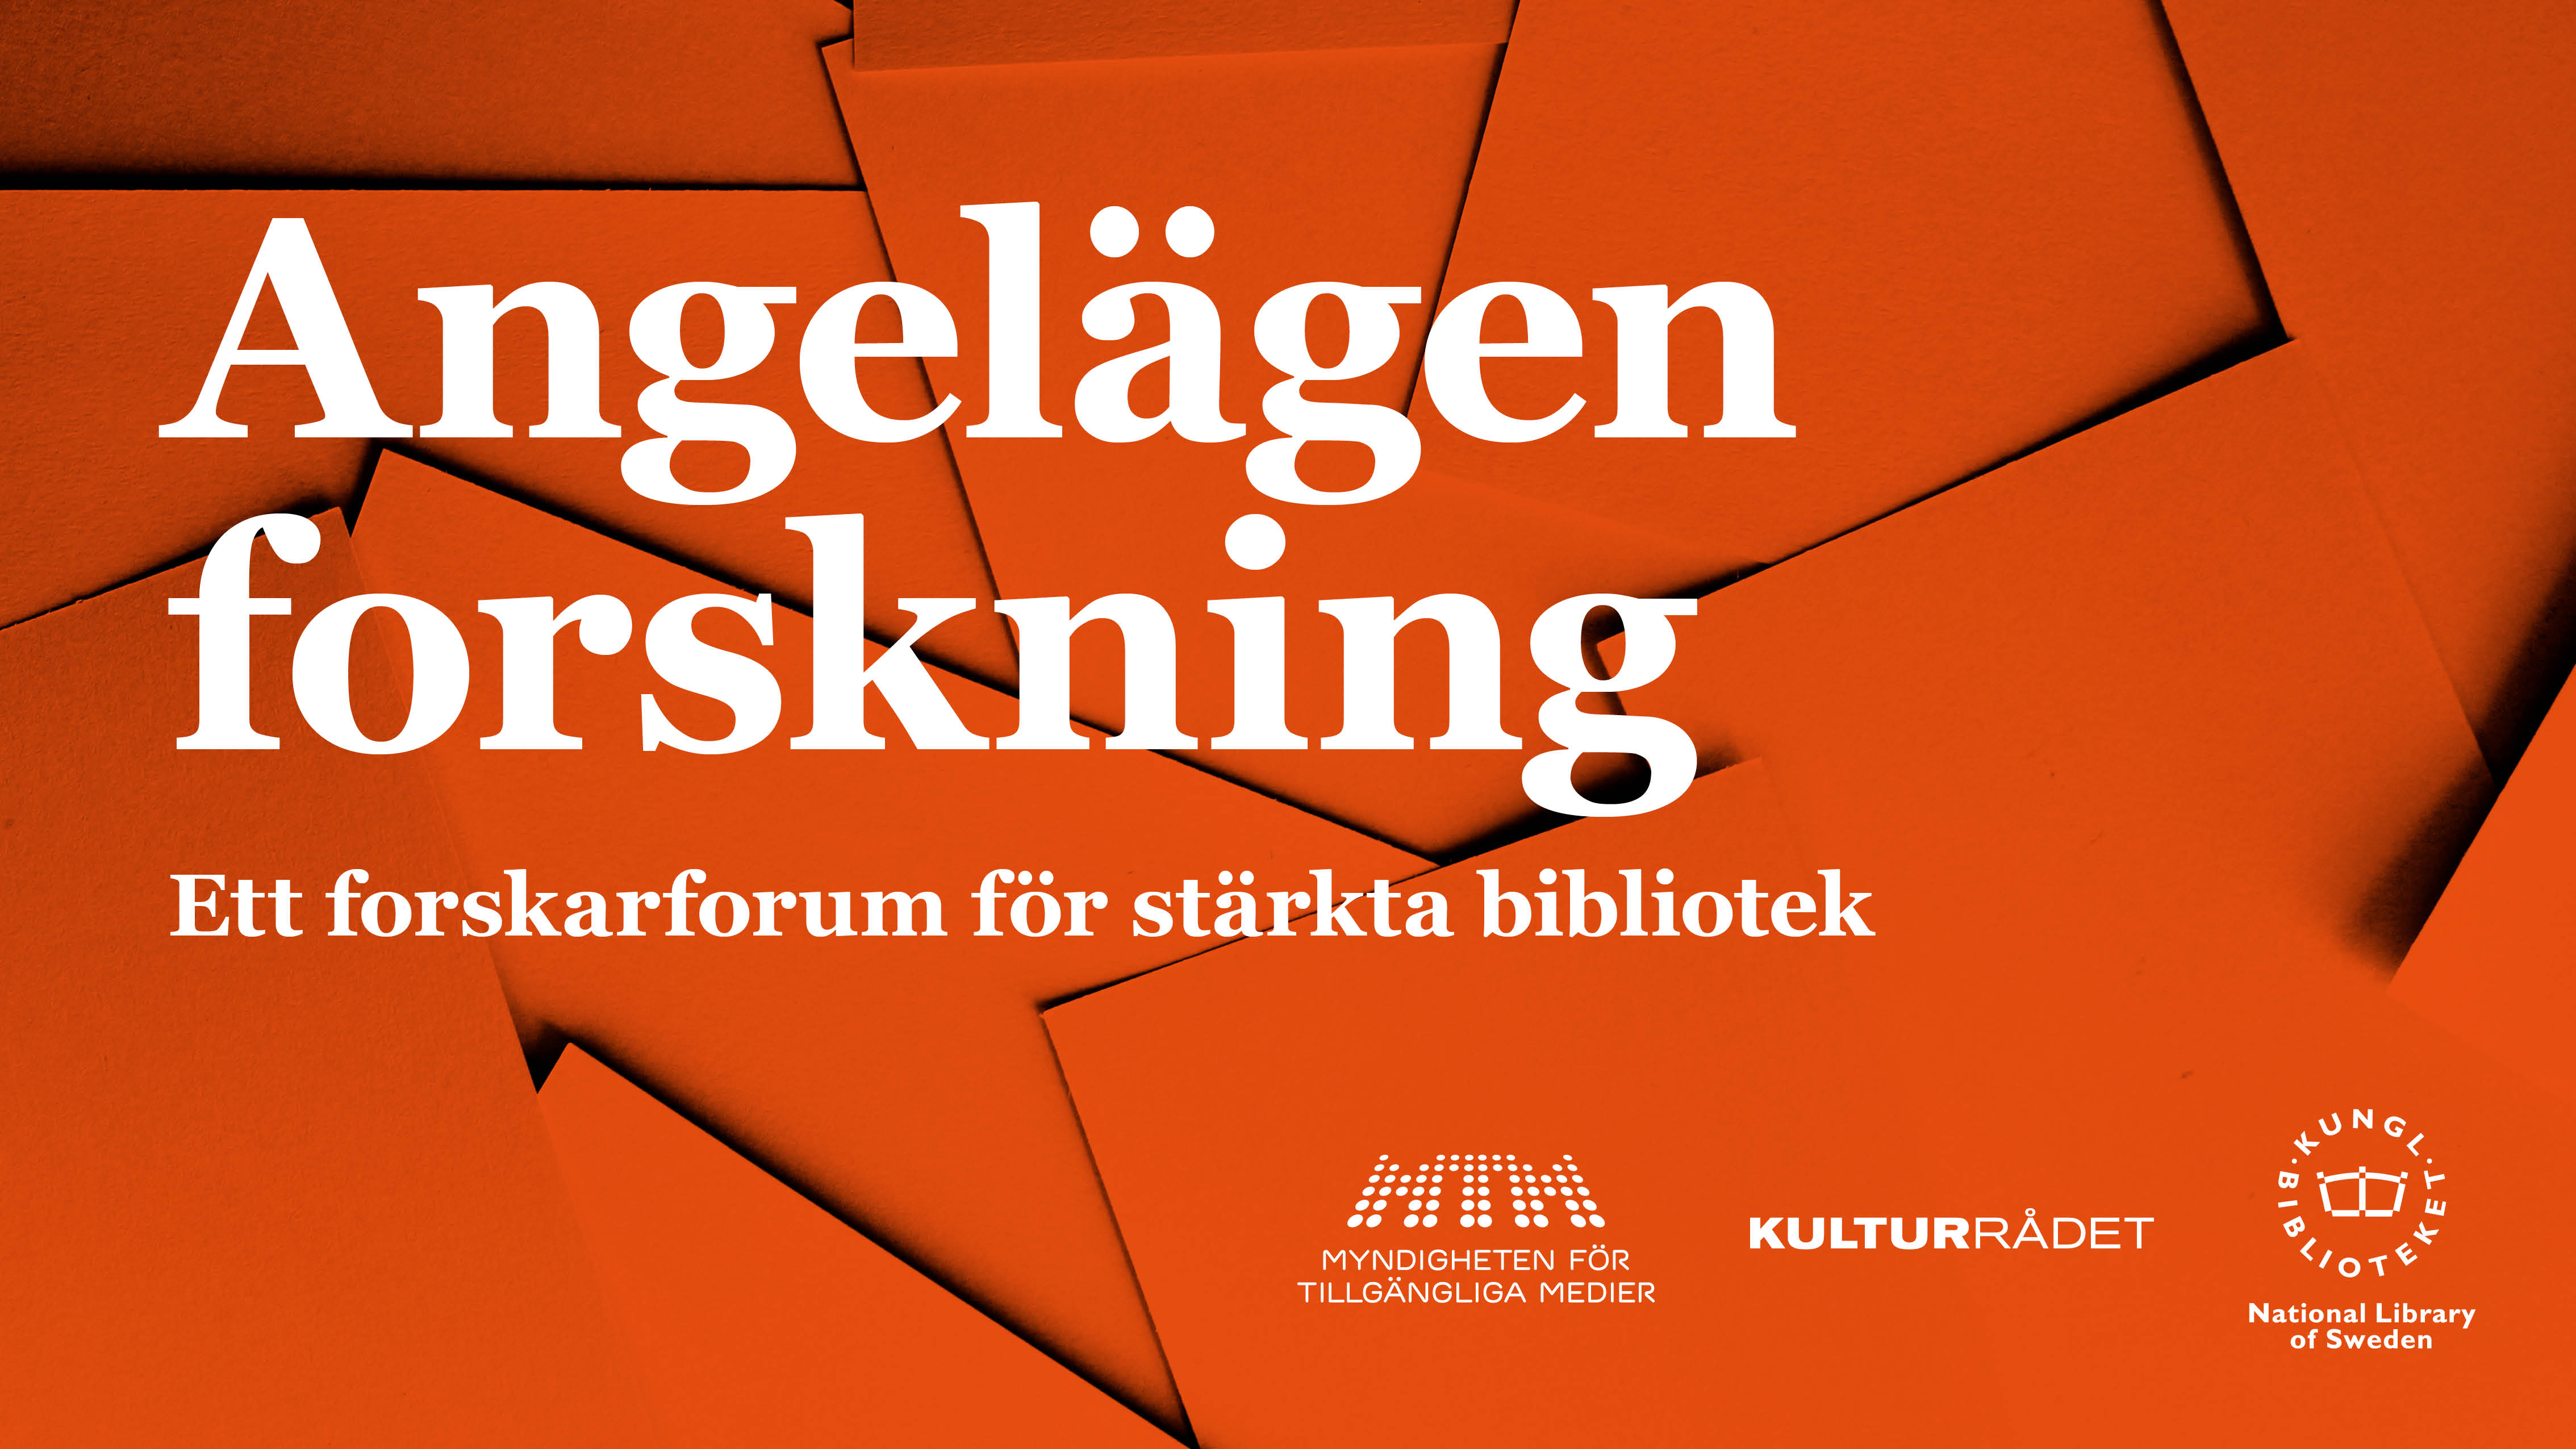 Grafisk illustration med röd bakgrund och vit text. Kungliga biblioteket, Kulturrådet och Myndigheten för tillgängliga mediers logotyper i vitt.